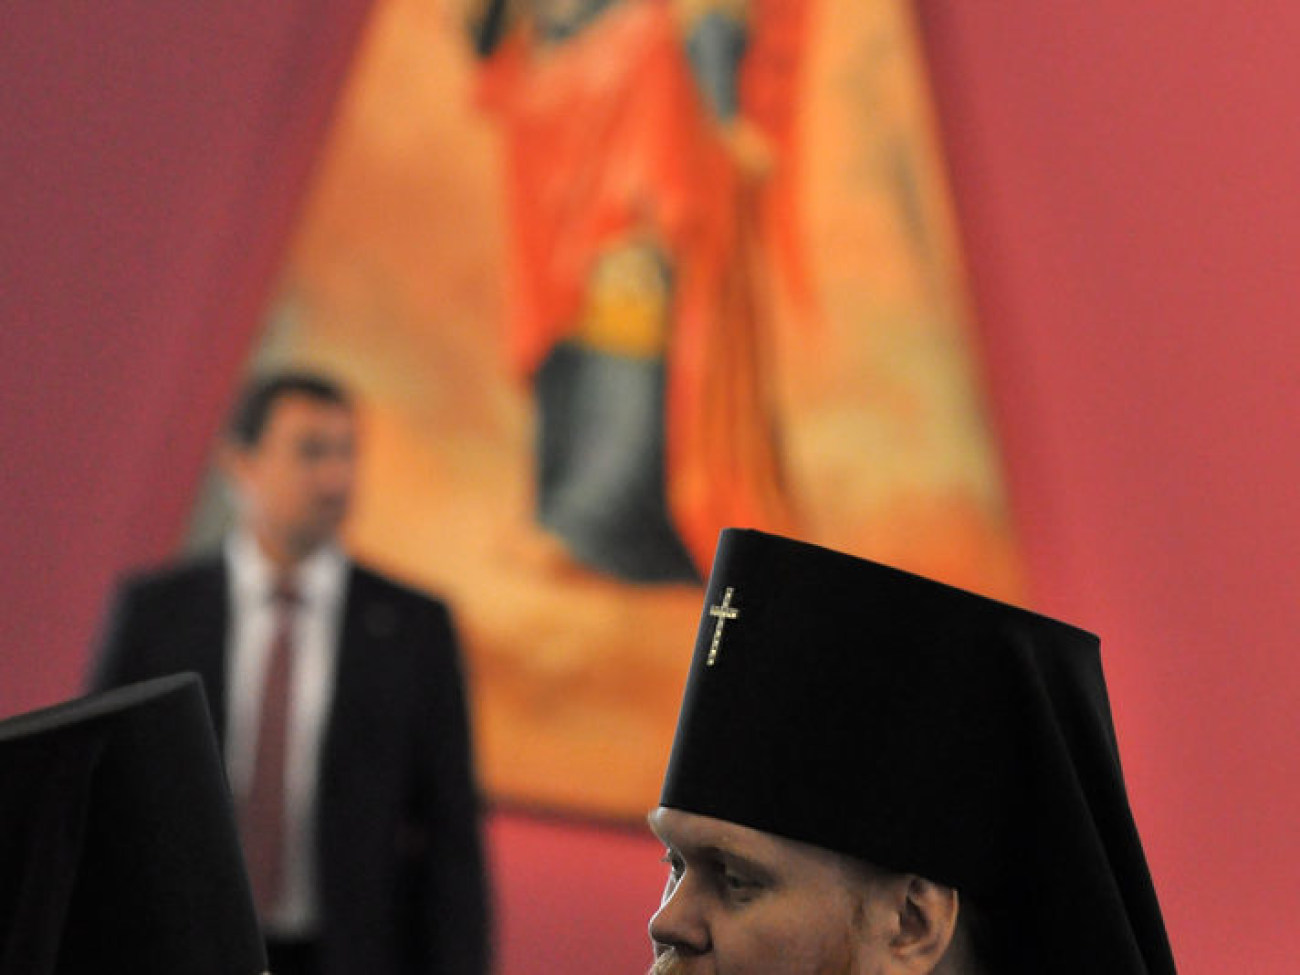 Президент Украины Виктор Янукович принял участие в мероприятиях по празднованию 1025-летия крещения Киевской Руси